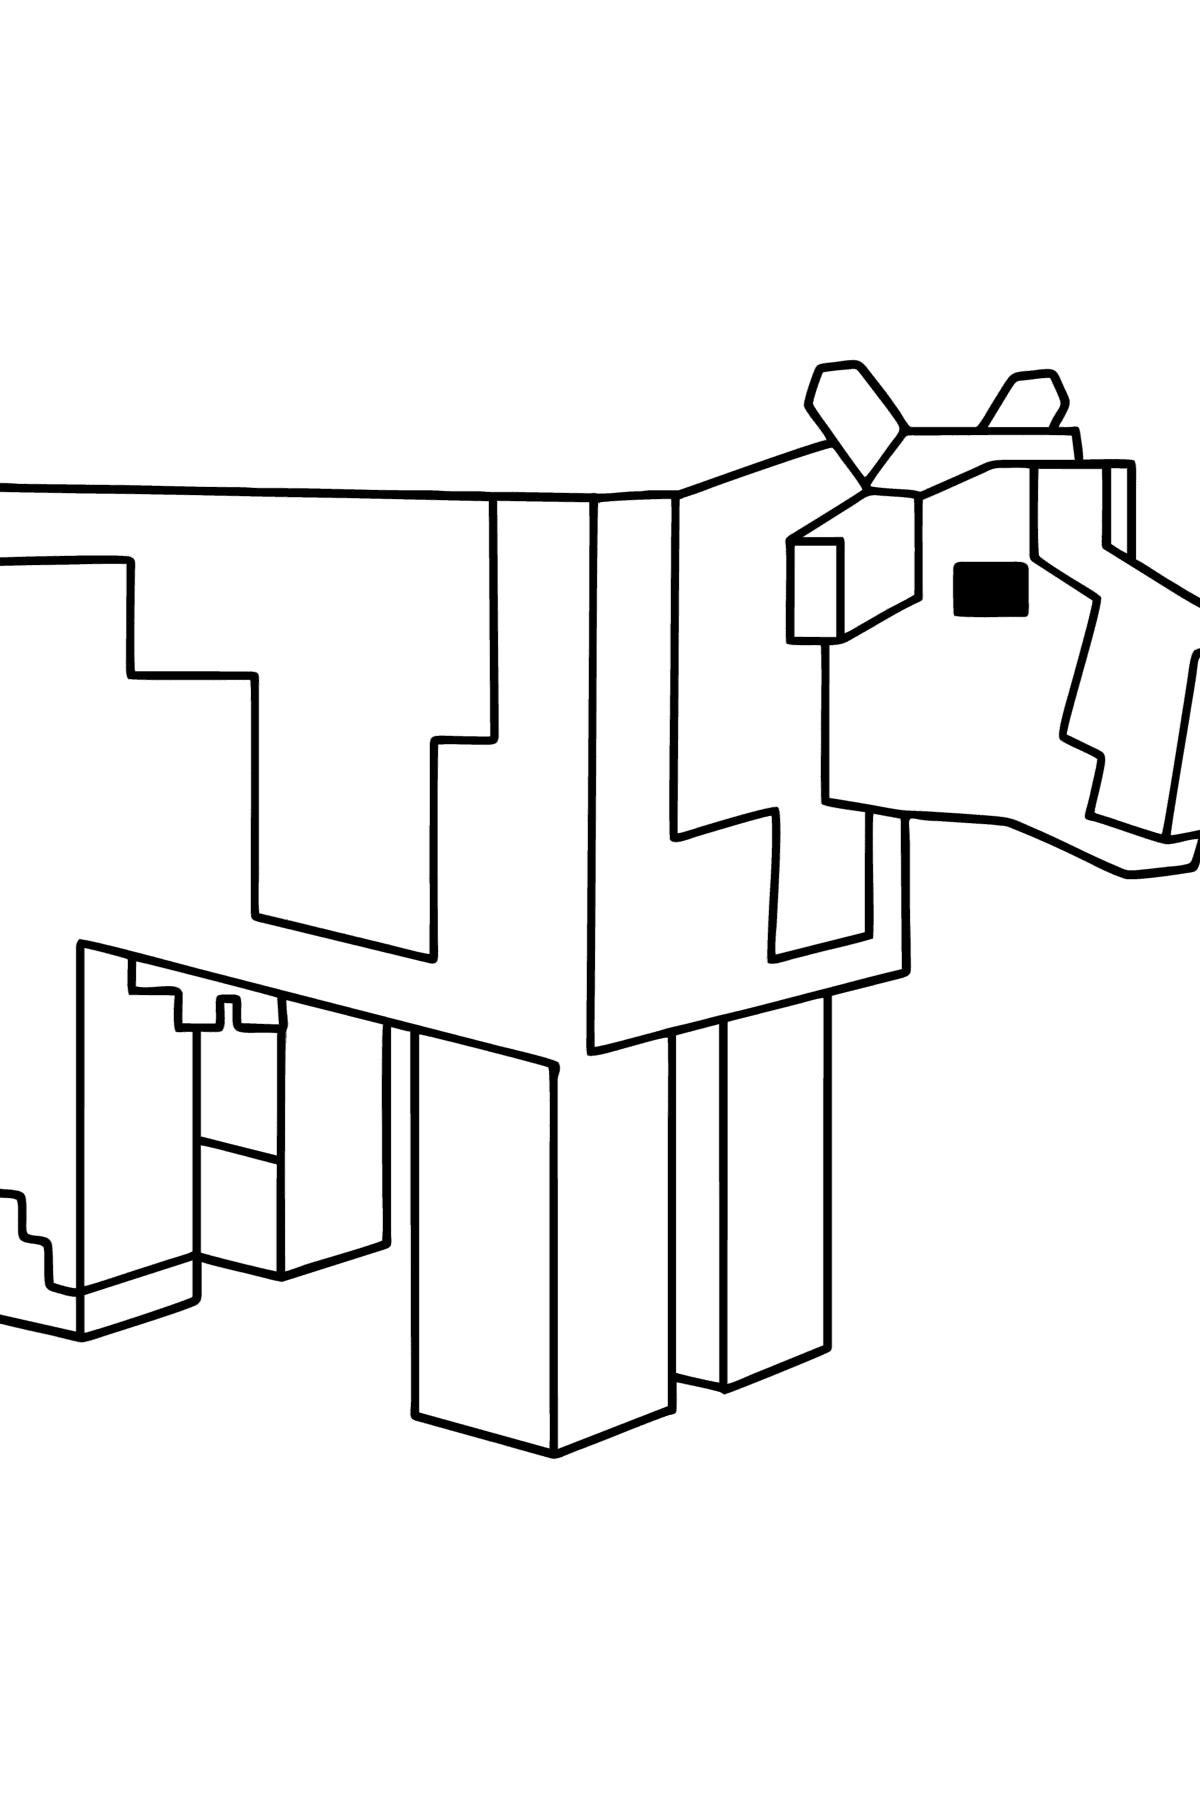 Dibujo de Minecraft Cow para colorear - Dibujos para Colorear para Niños